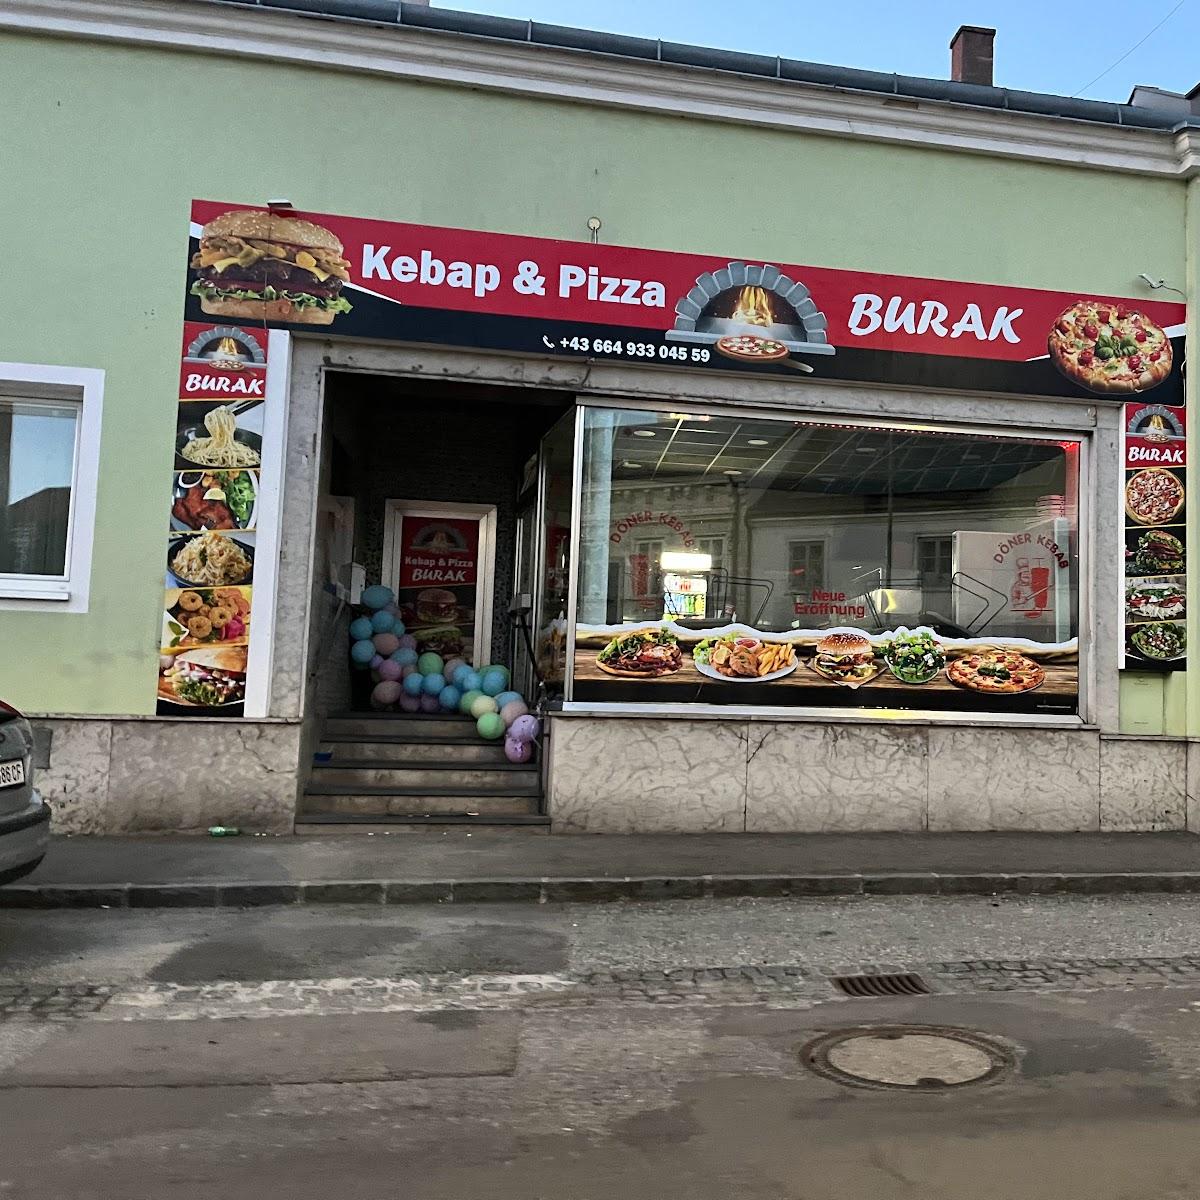 Restaurant "Kebap & Pizza Burak" in Waidhofen an der Thaya